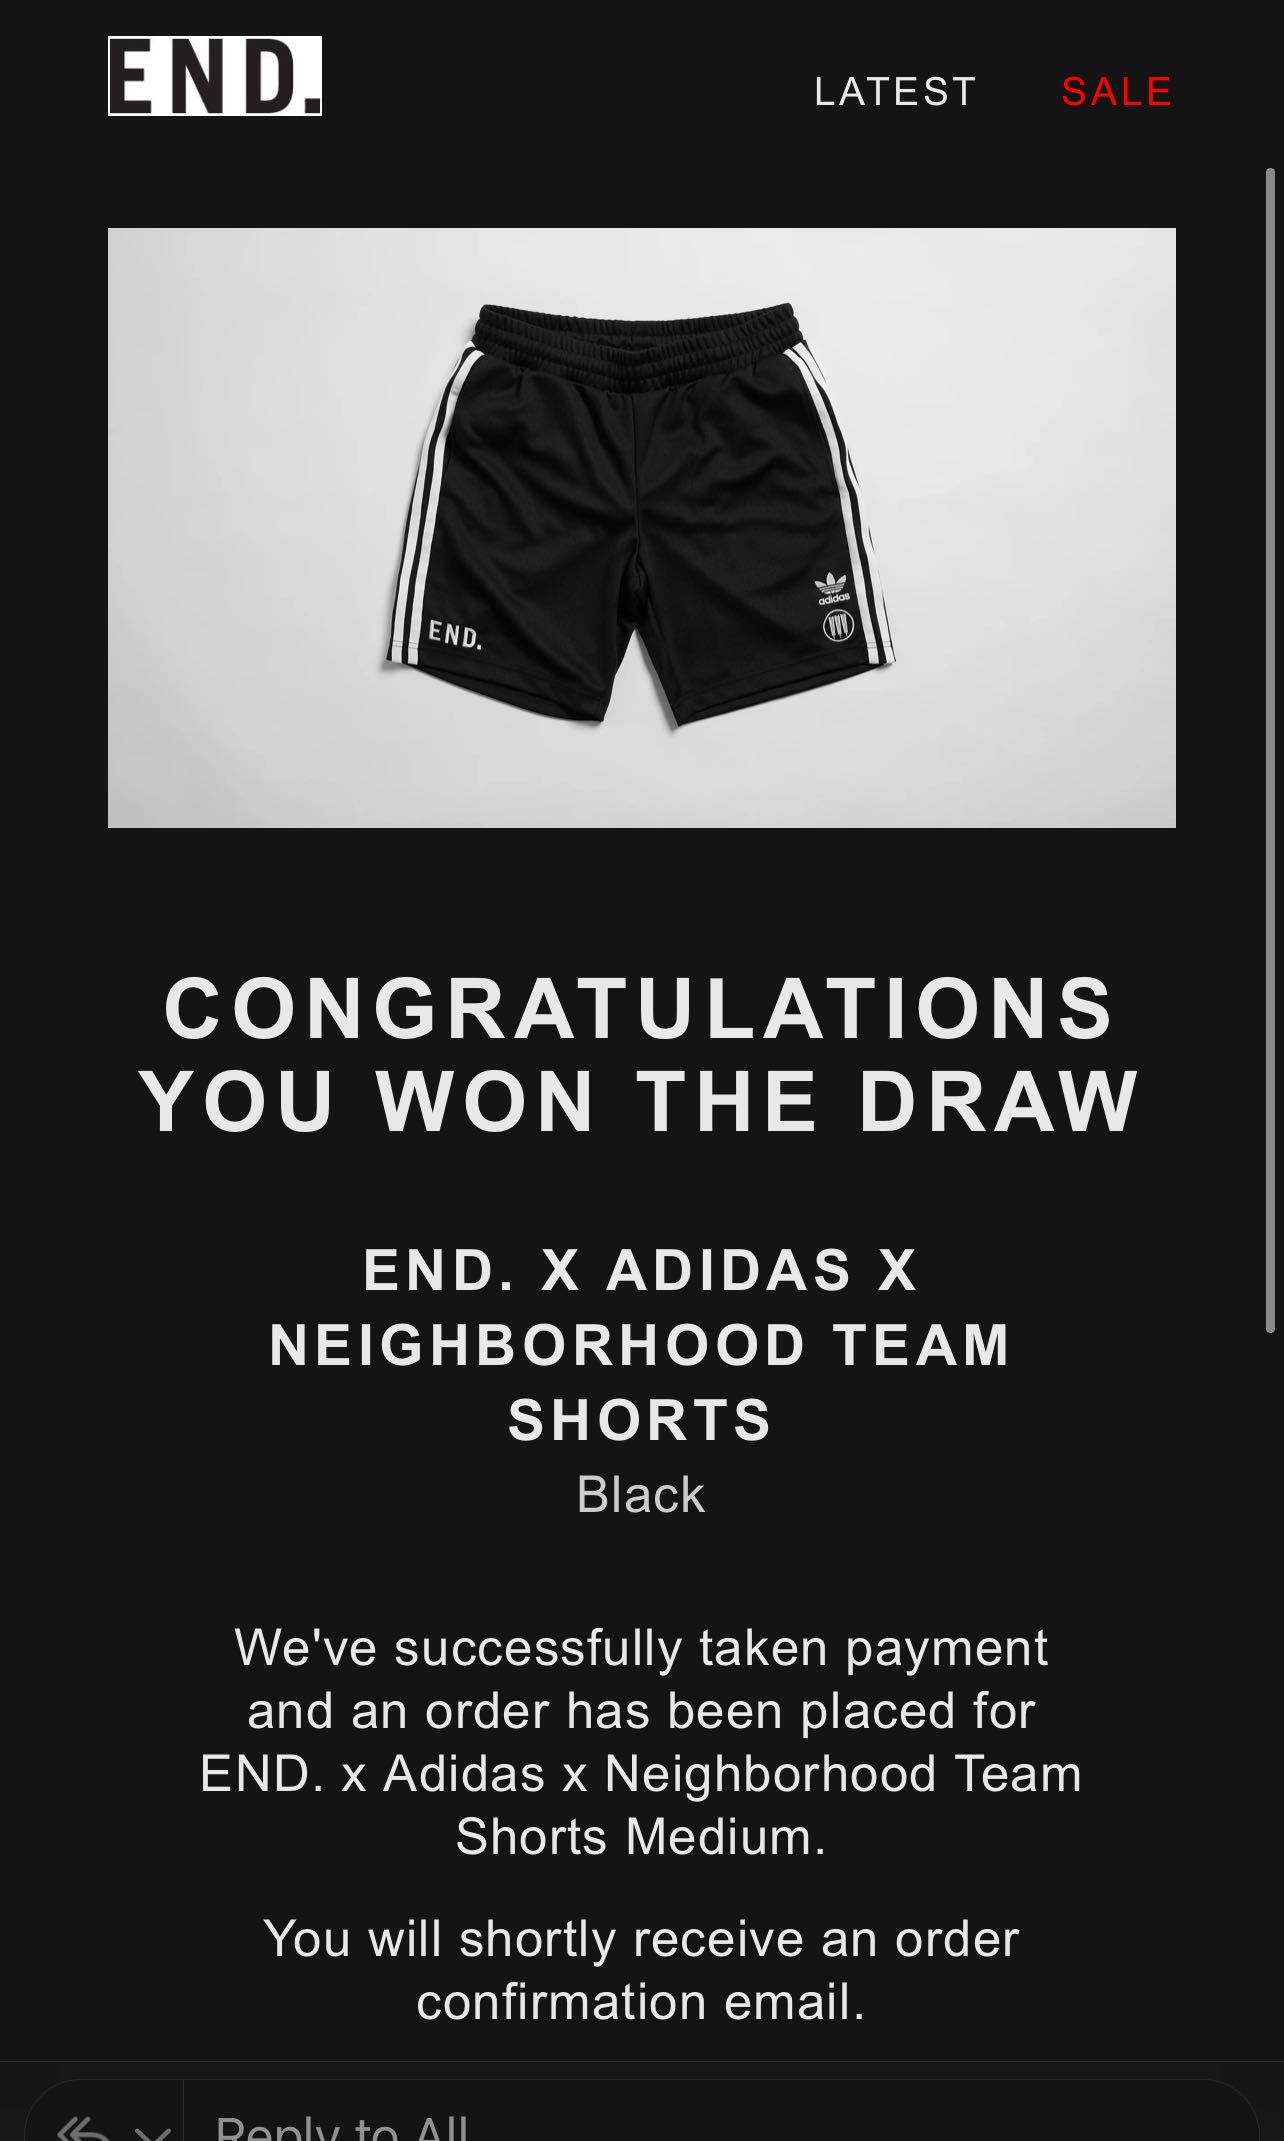 End x Adidas x neighbourhood team shorts